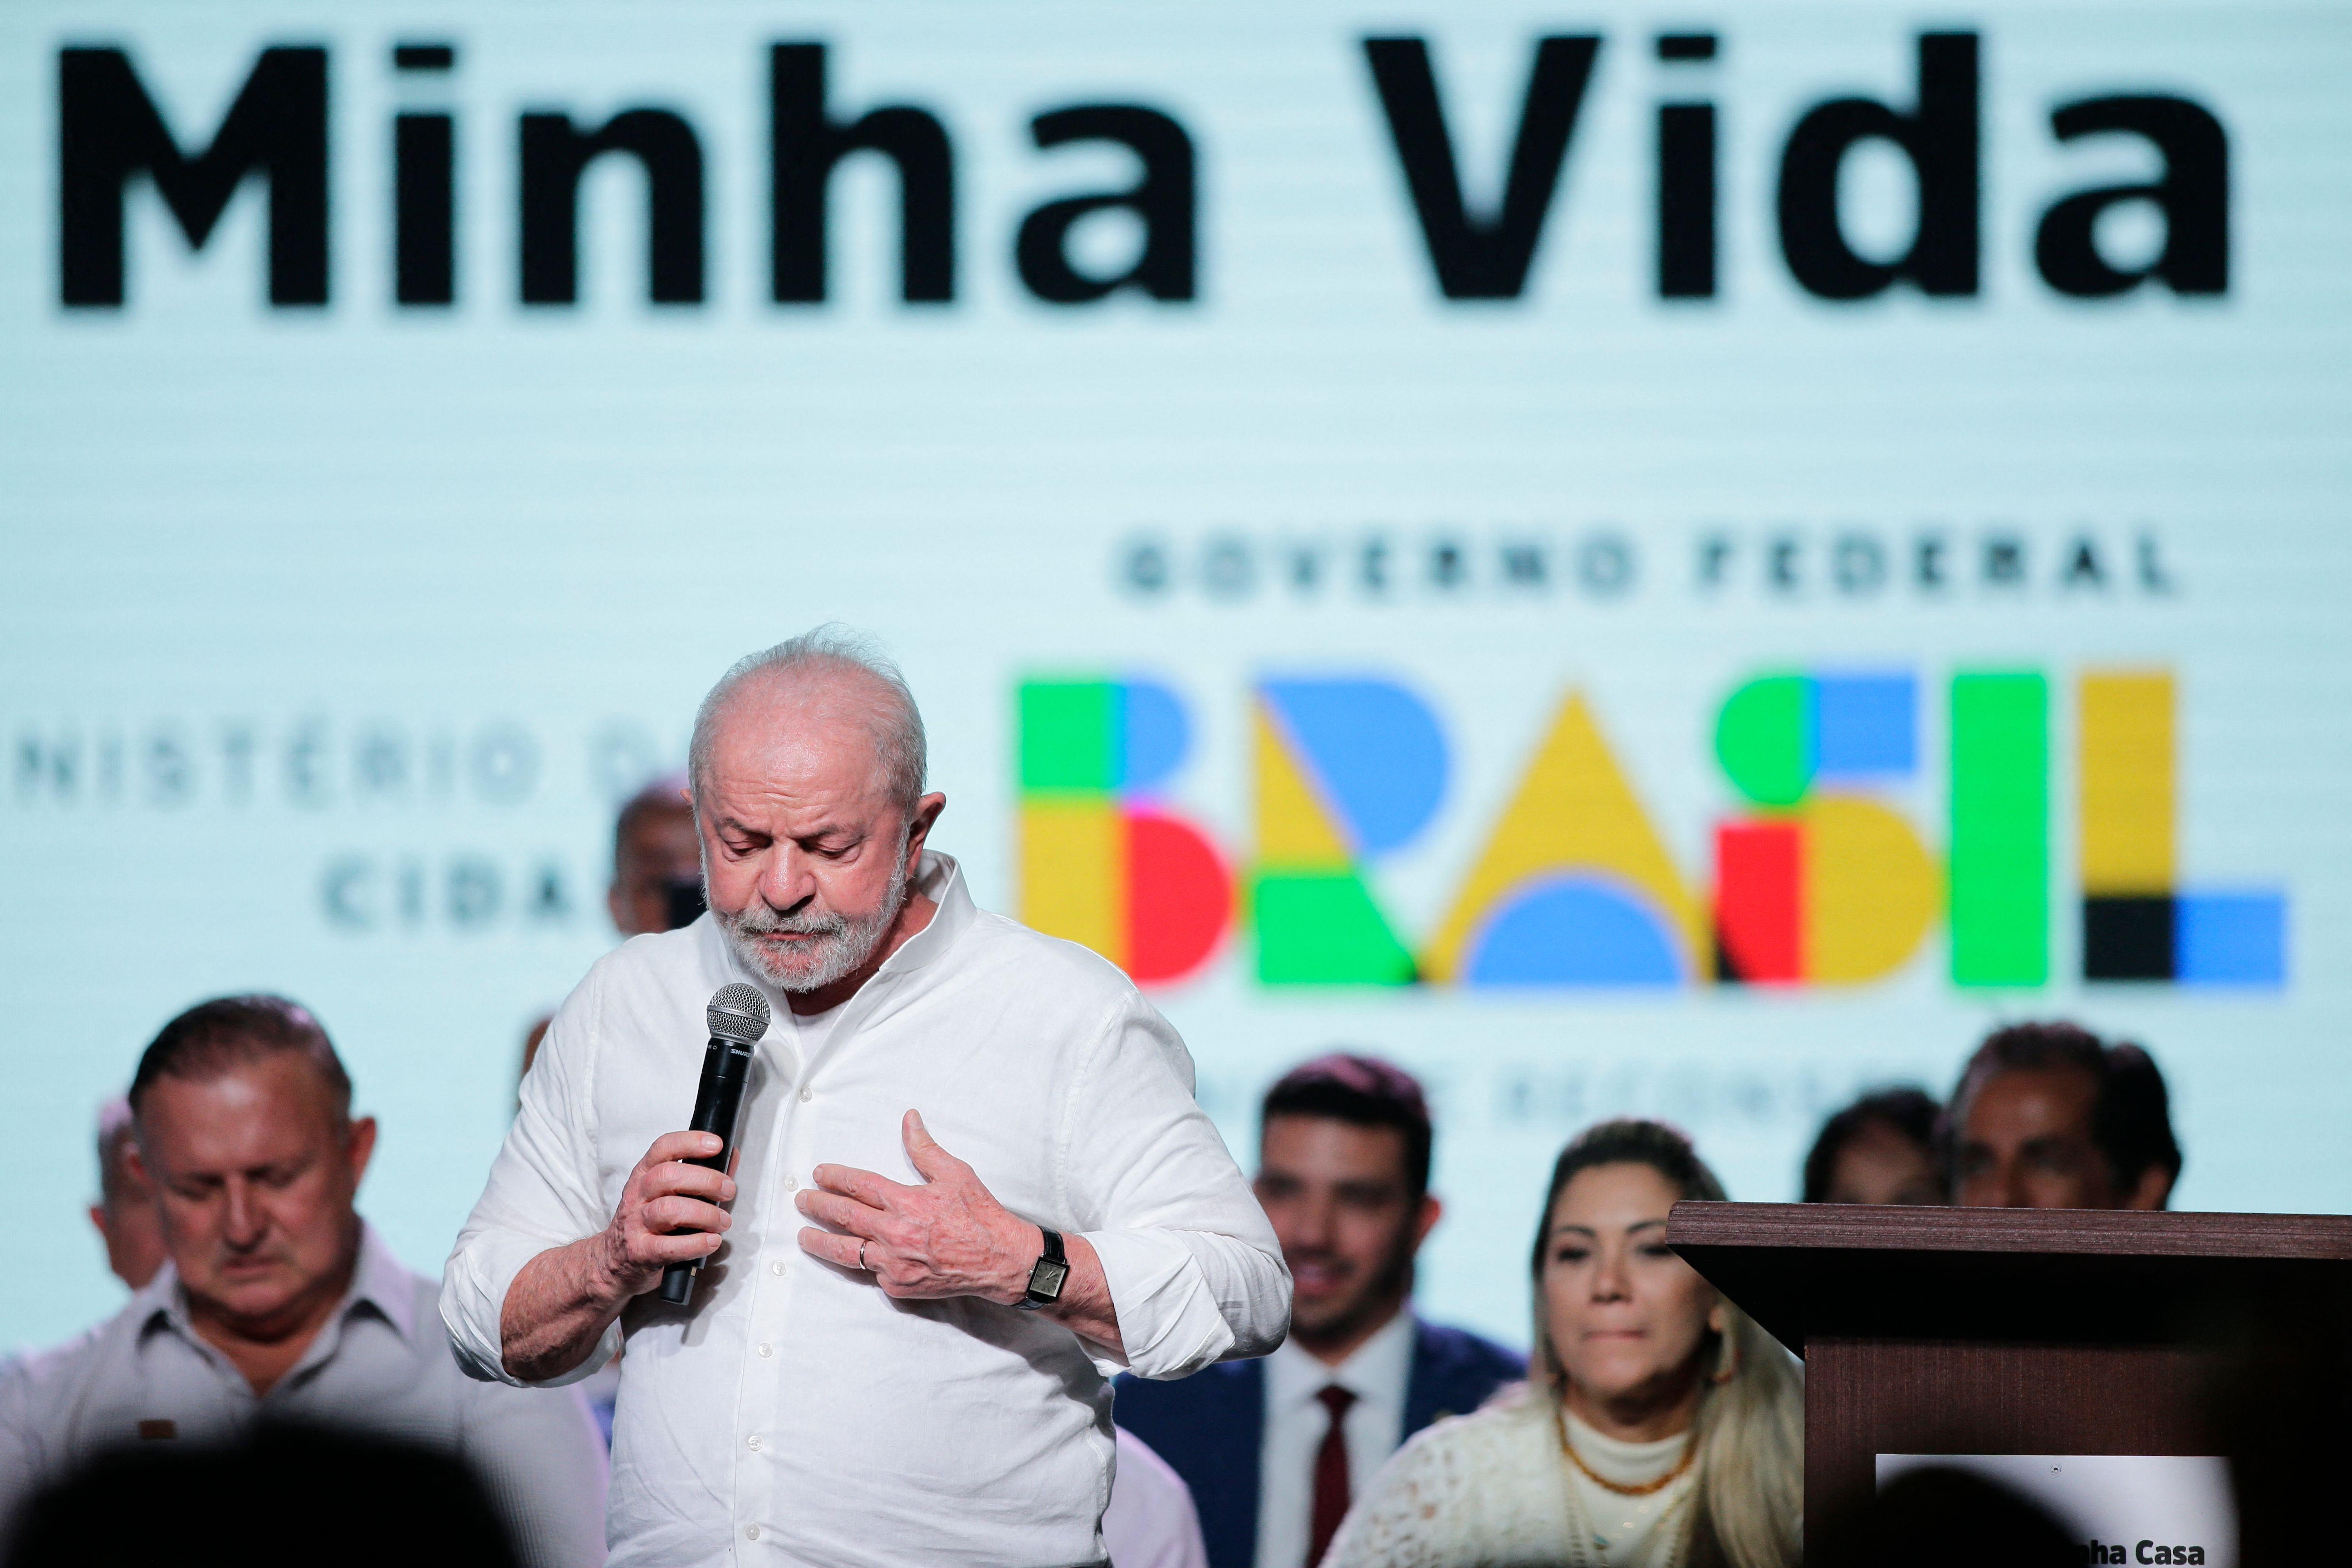 Cuidado: bolsonarismo mente sobre Lula em Paraisópolis e espalha